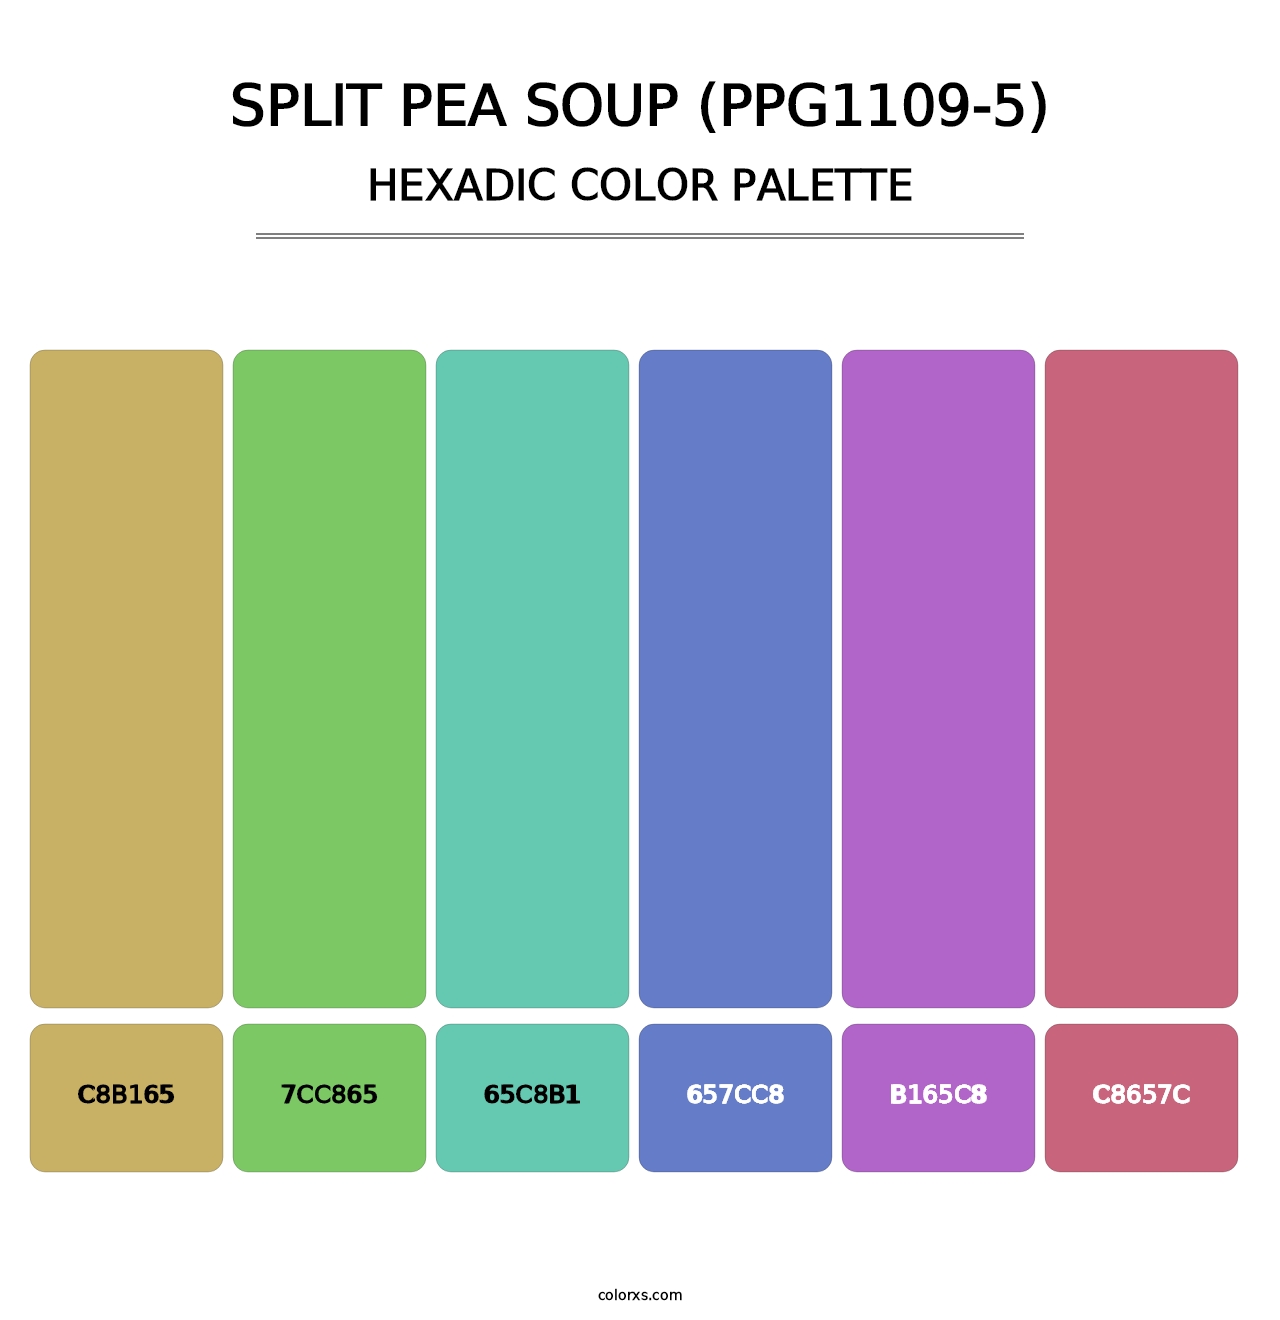 Split Pea Soup (PPG1109-5) - Hexadic Color Palette